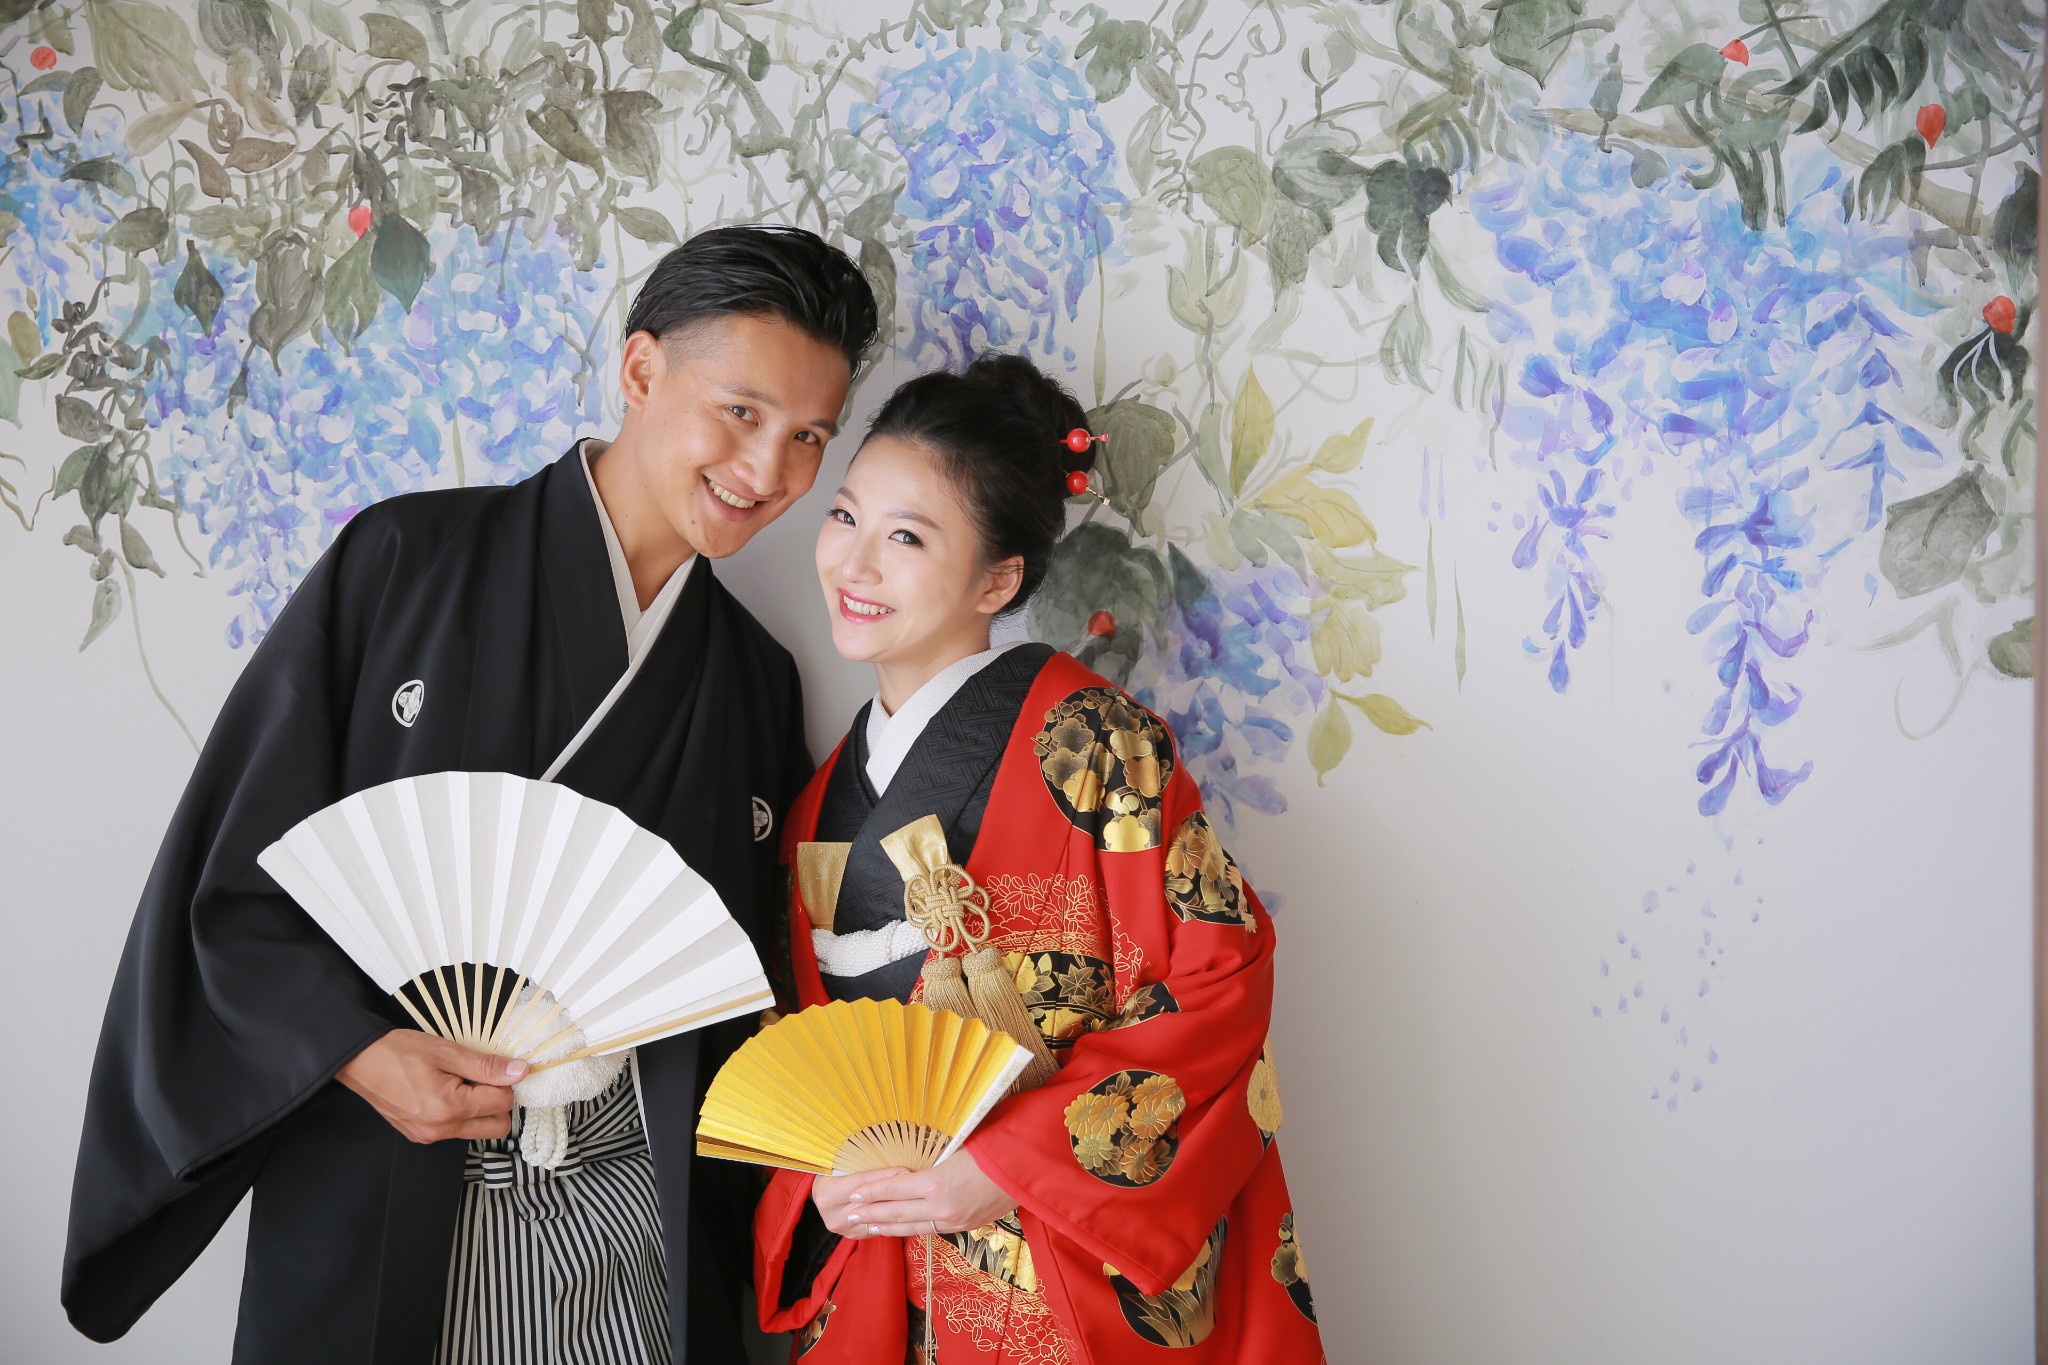 我的第四套结婚照日本新宿和服结婚照